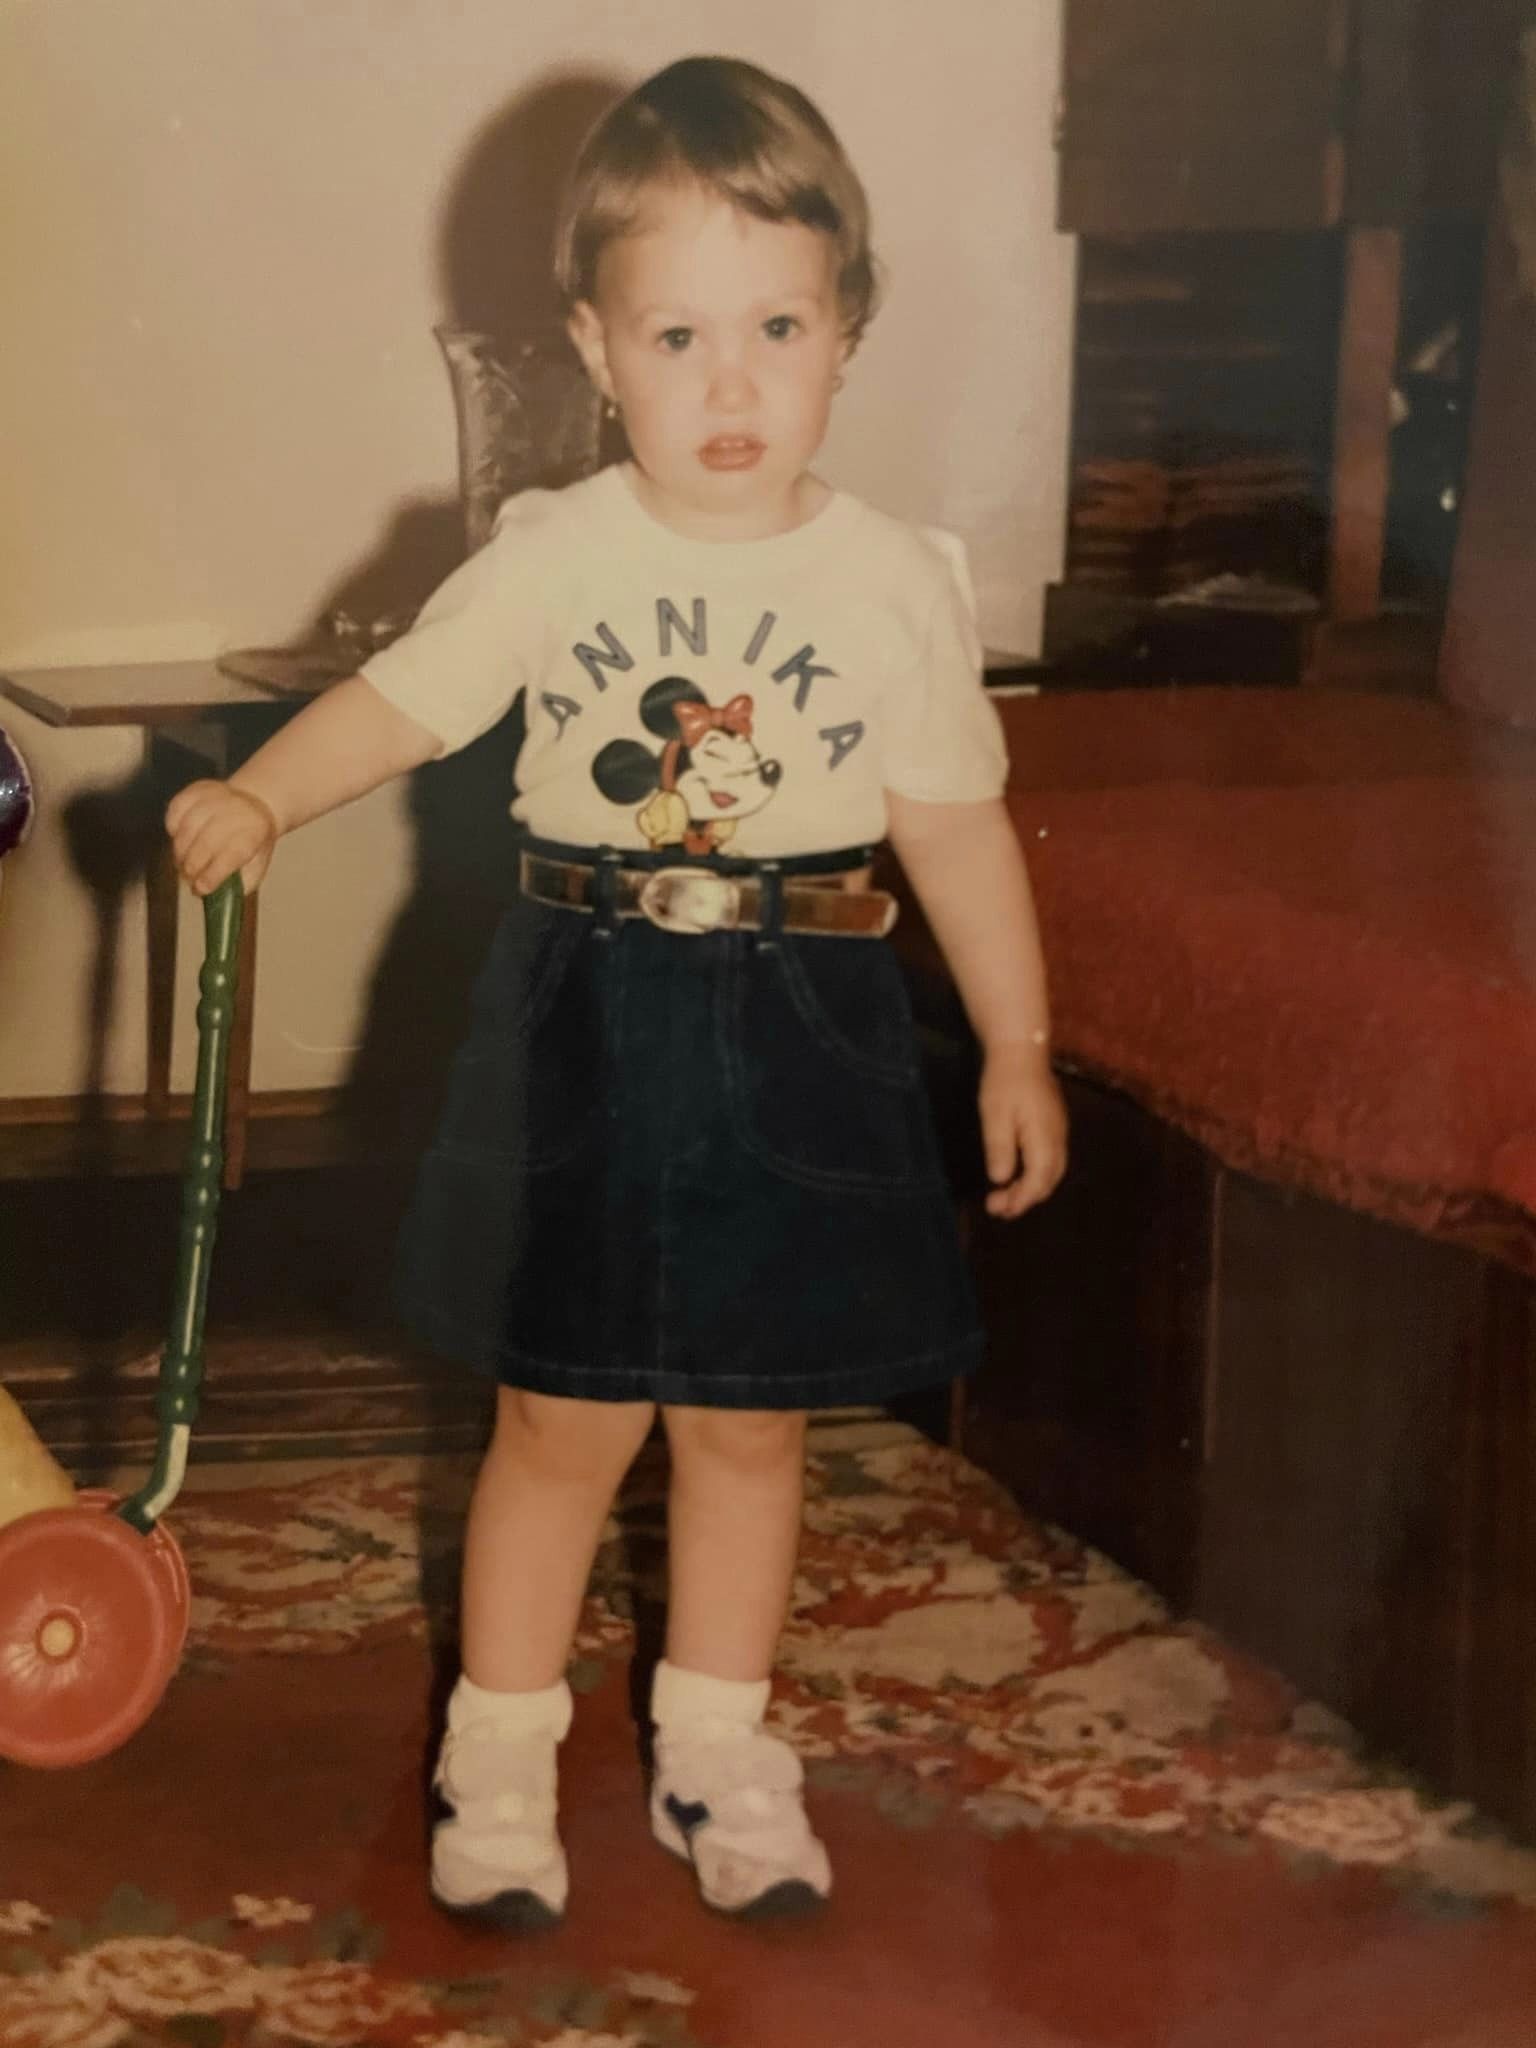 Fiica Marinei Almășan când era mică, îmbrăcată într-o fustă de blugi și într-un tricou cu Minnie Mouse